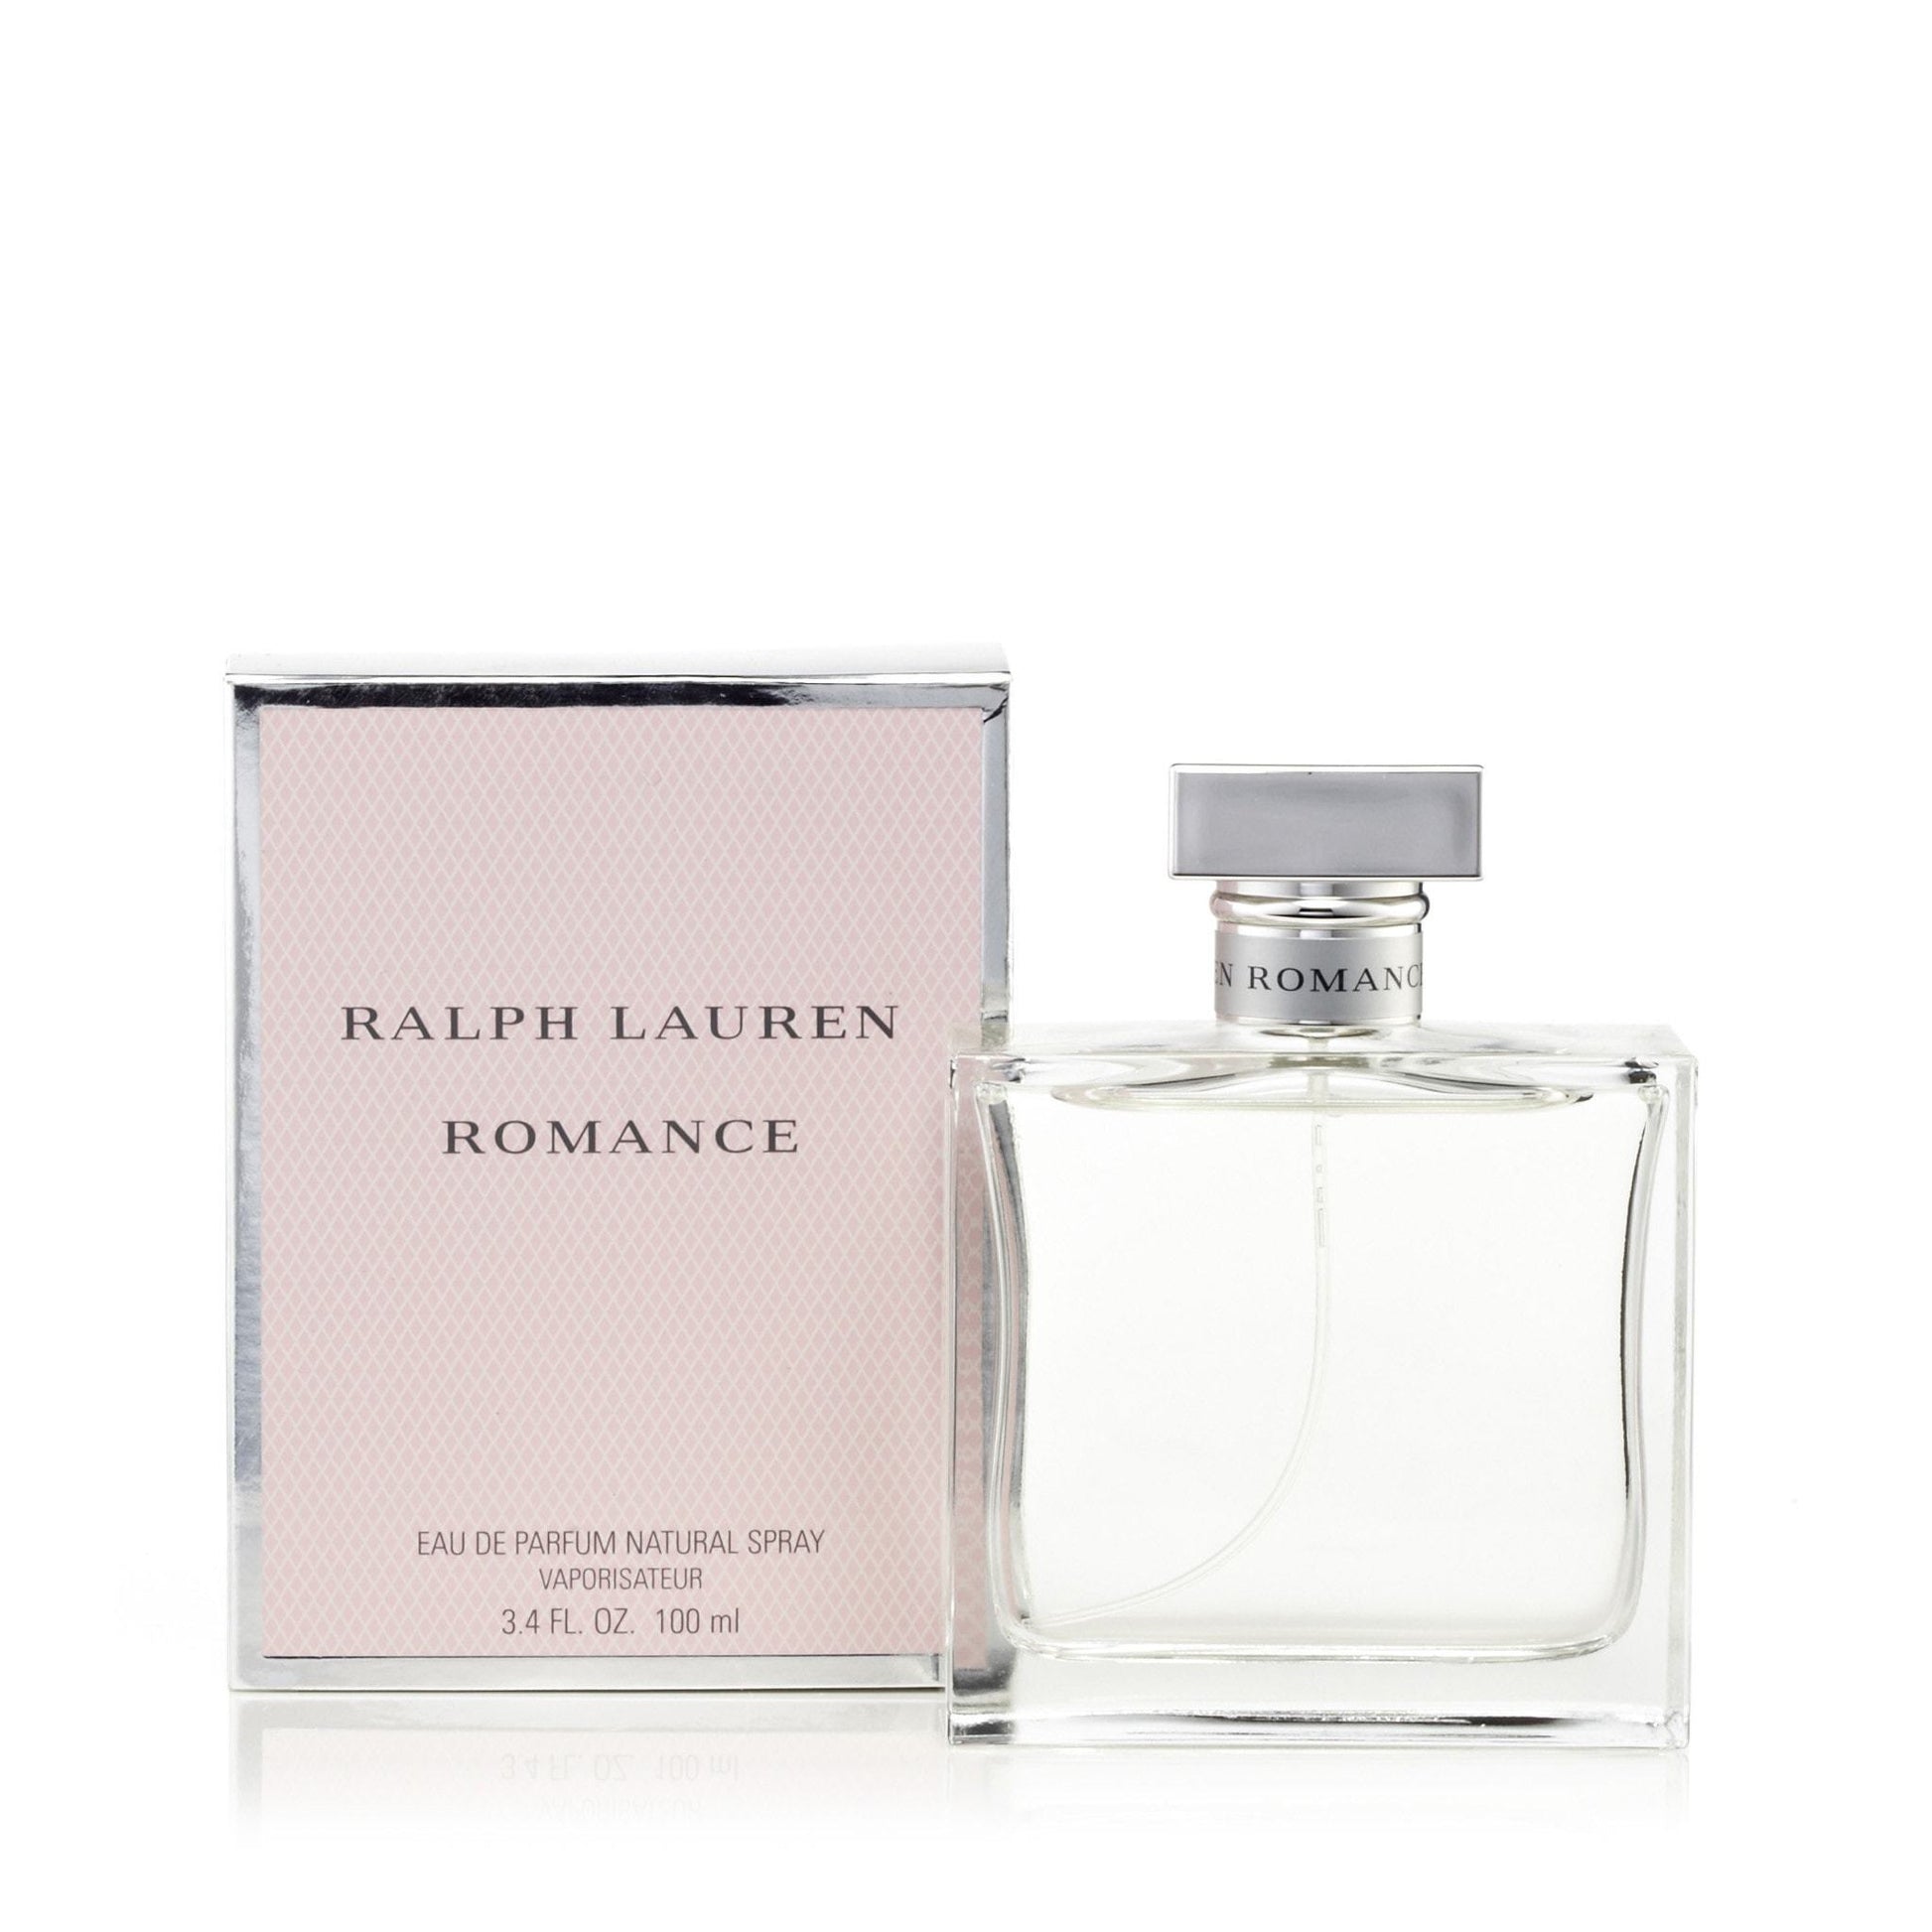 Romance Eau de Parfum Spray for Women by Ralph Lauren, Product image 1